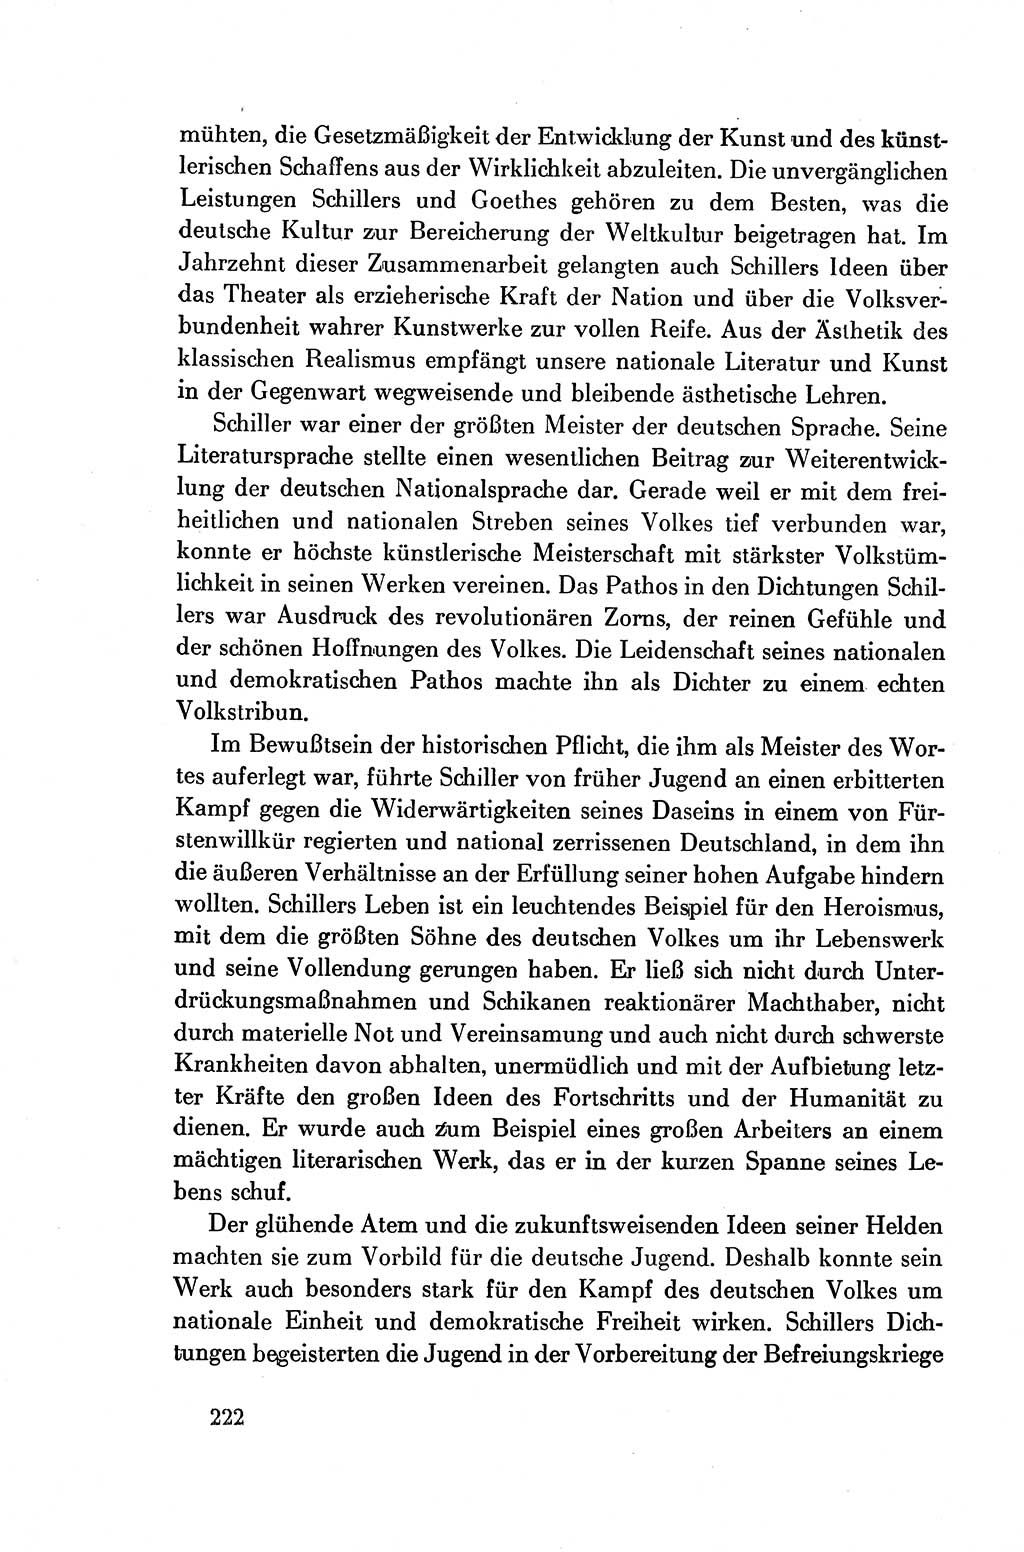 Dokumente der Sozialistischen Einheitspartei Deutschlands (SED) [Deutsche Demokratische Republik (DDR)] 1954-1955, Seite 222 (Dok. SED DDR 1954-1955, S. 222)